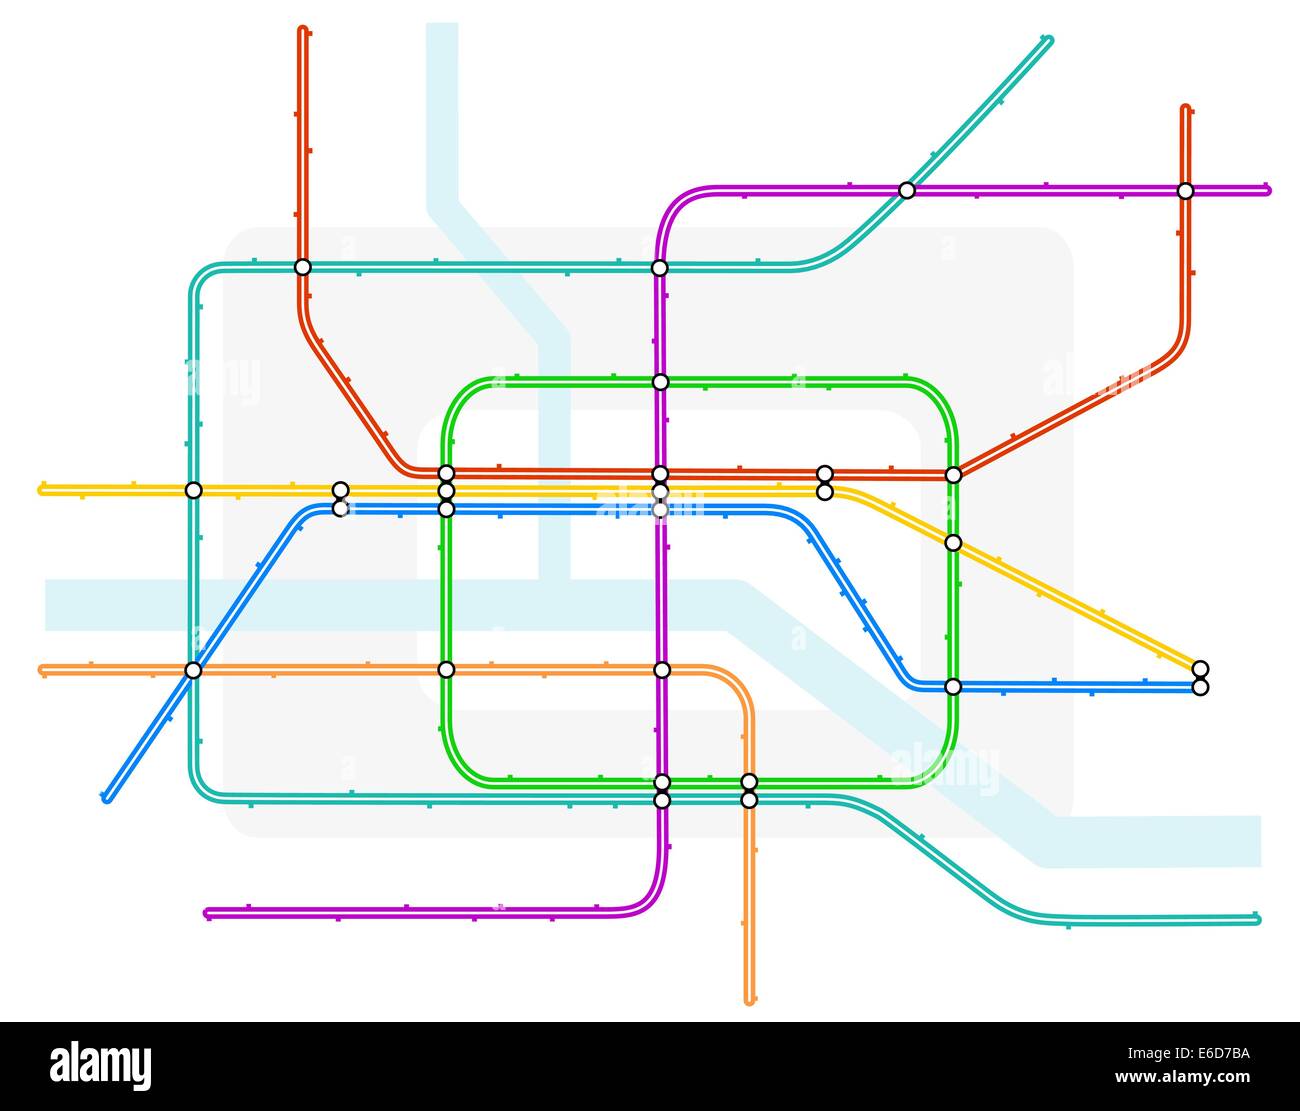 Bearbeitbares Vektor-Illustration von einer generischen farbcodierte u-Bahn Zug Karte Stock Vektor